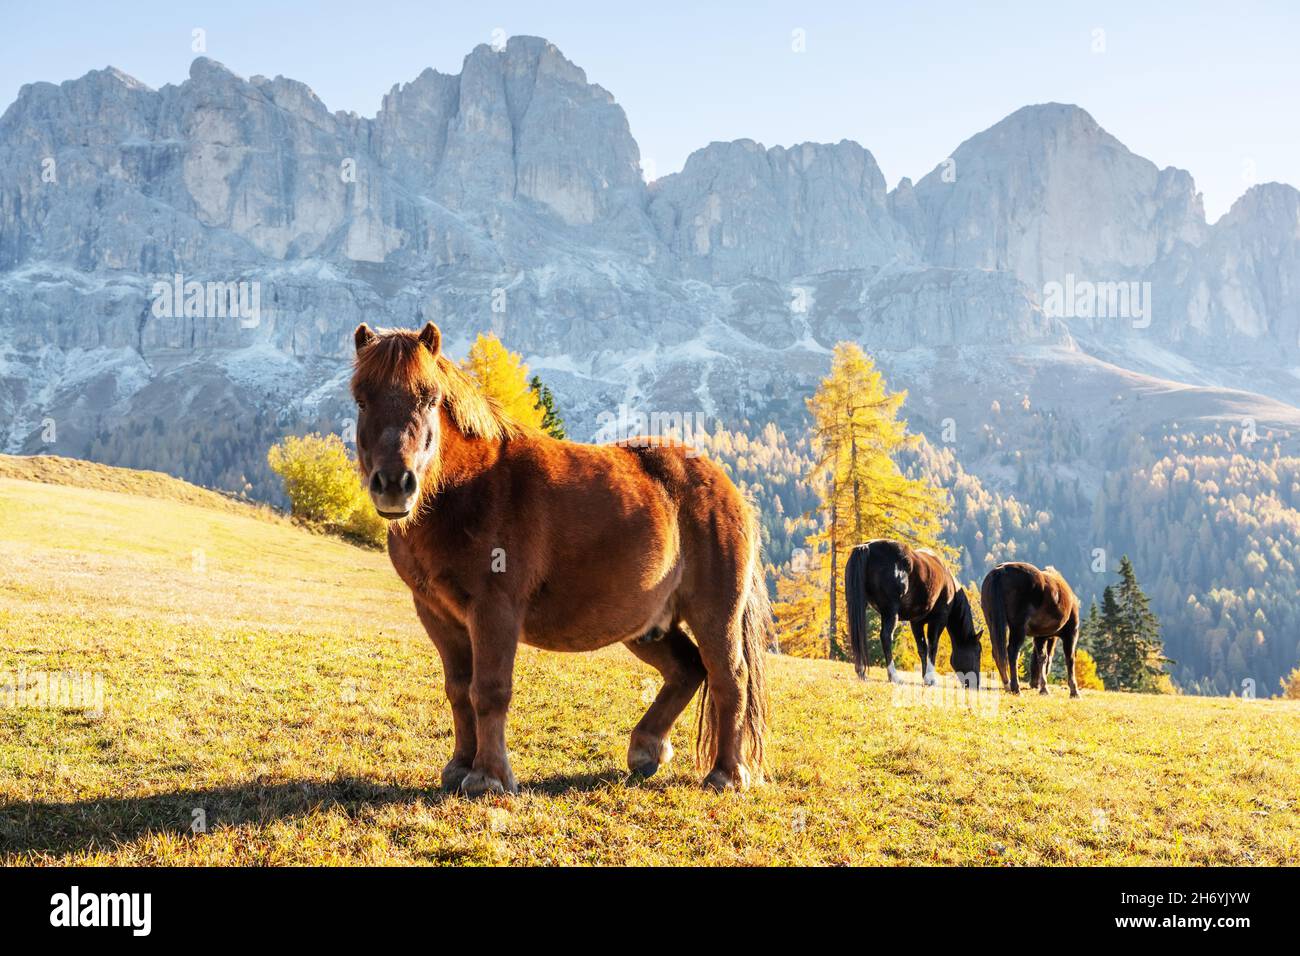 Niedliches behaartes Pferd auf einer Herbstwiese in den Dolomiten. Schöne ländliche italienische Landschaft mit Pferden und Gipfeln der hohen Berge im Hintergrund. Nigerpass (Passo Nigra), Dolomiten, Italien Stockfoto